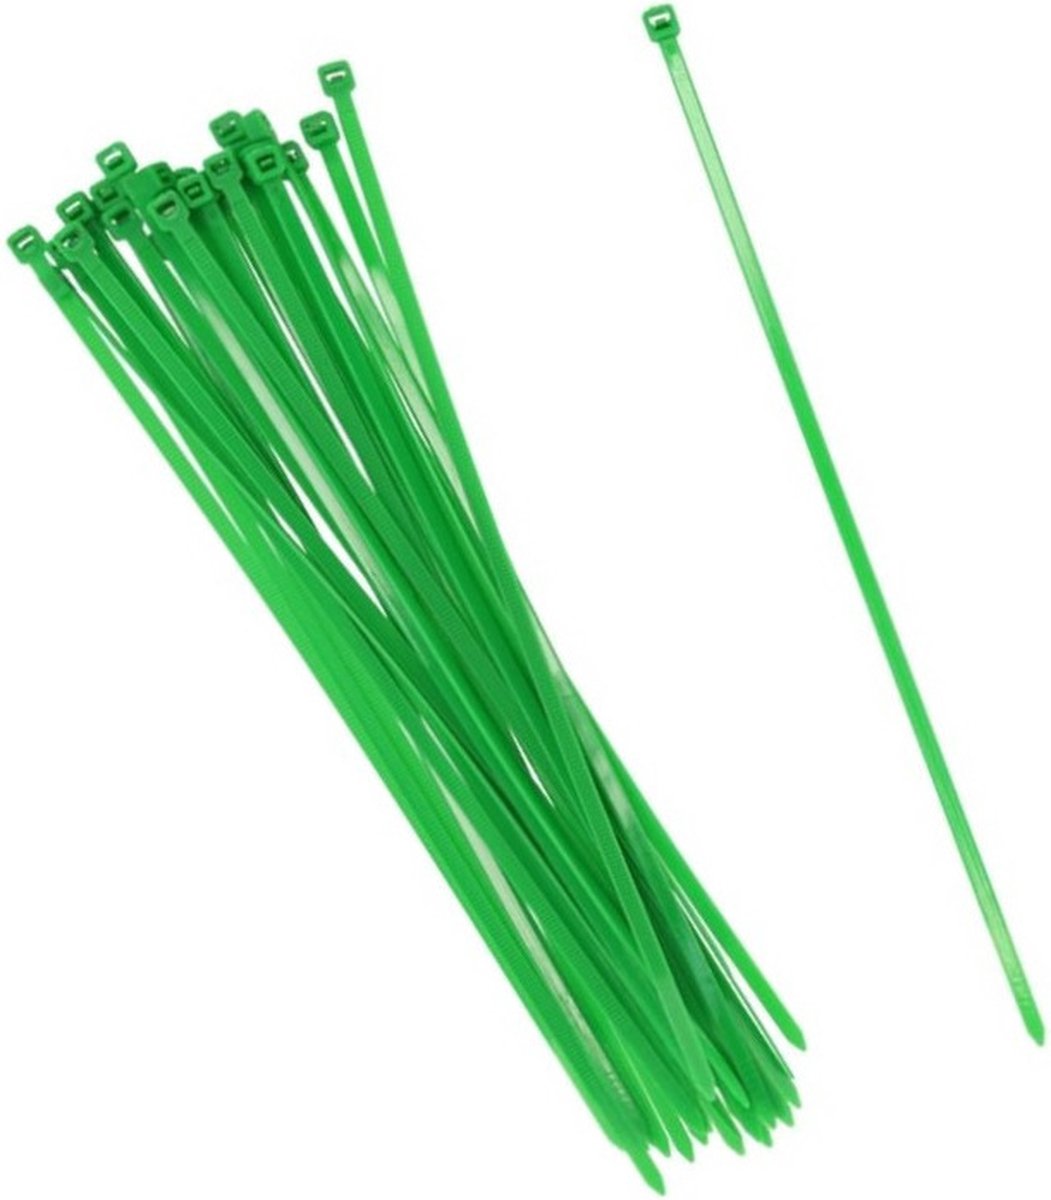 60x stuks Kabelbinders tie-wraps in het groen van 45 cm gemaakt van kunststof - 7.2 mm breed - snoeren bindmateriaal